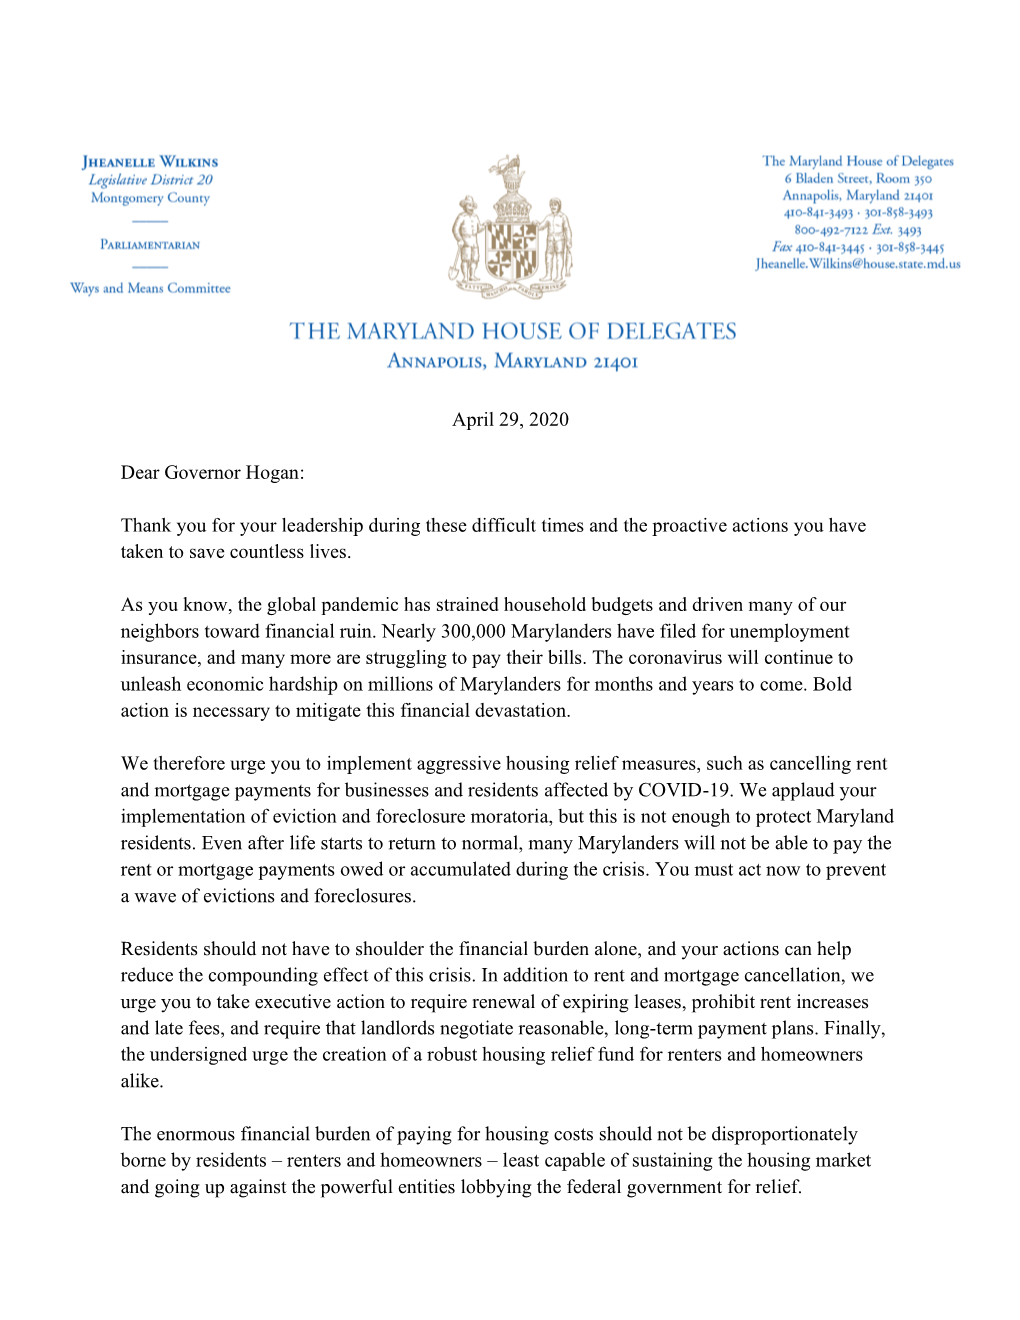 House Legislators' Housing Relief Letter